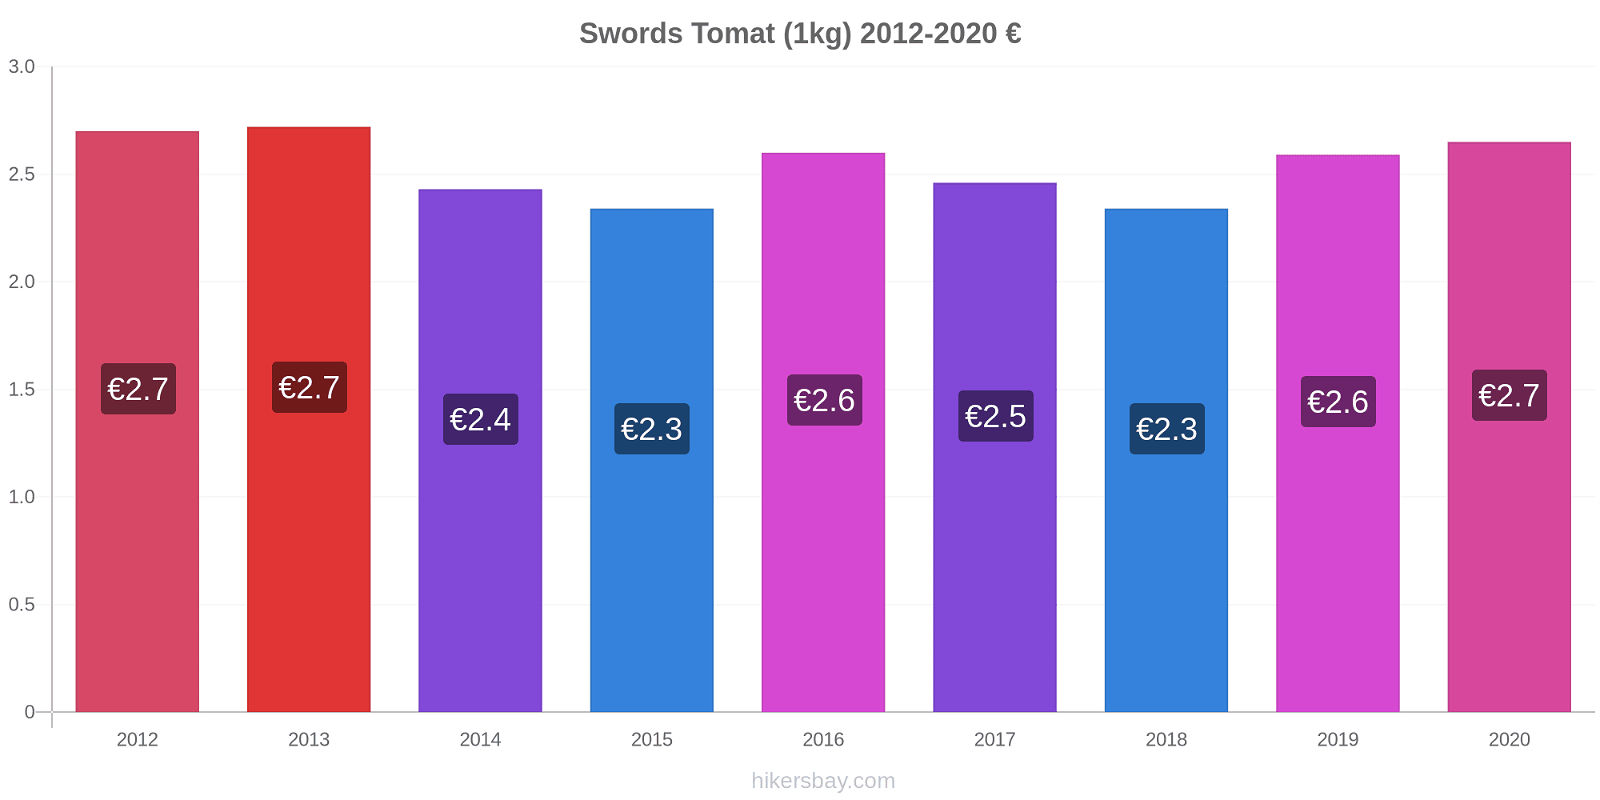 Swords prisförändringar Tomat (1kg) hikersbay.com